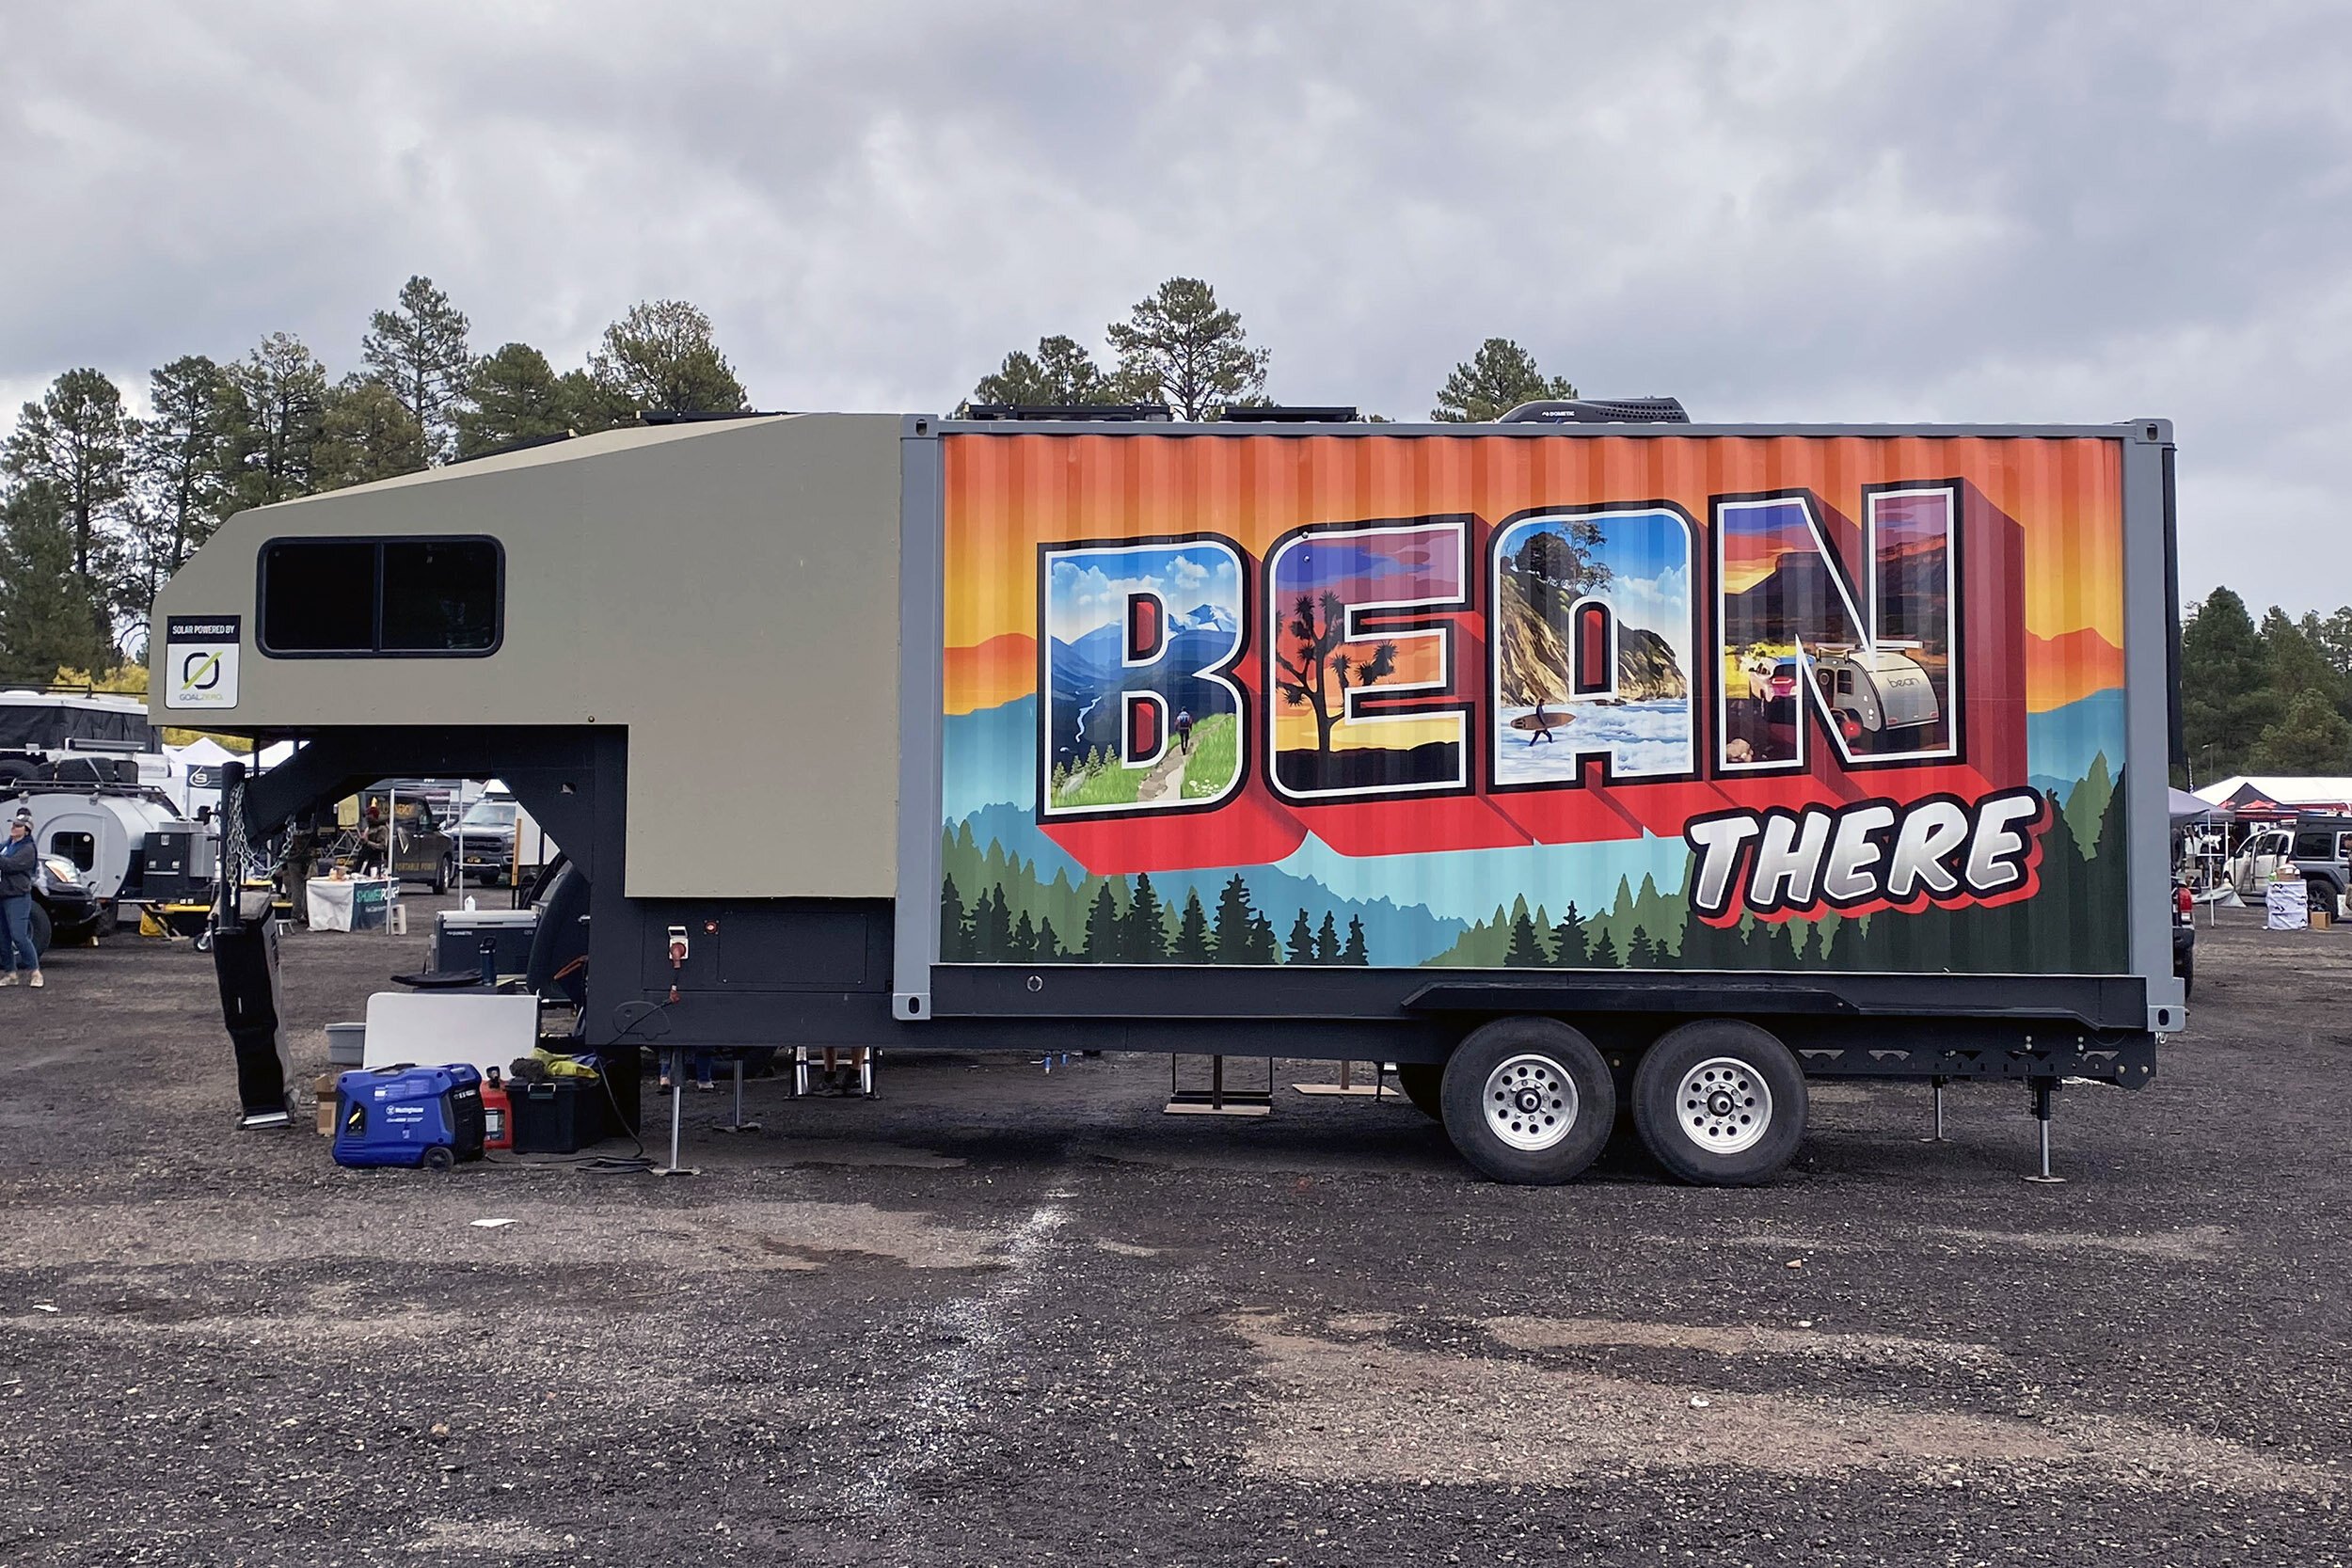 bean-there-trailer.jpg